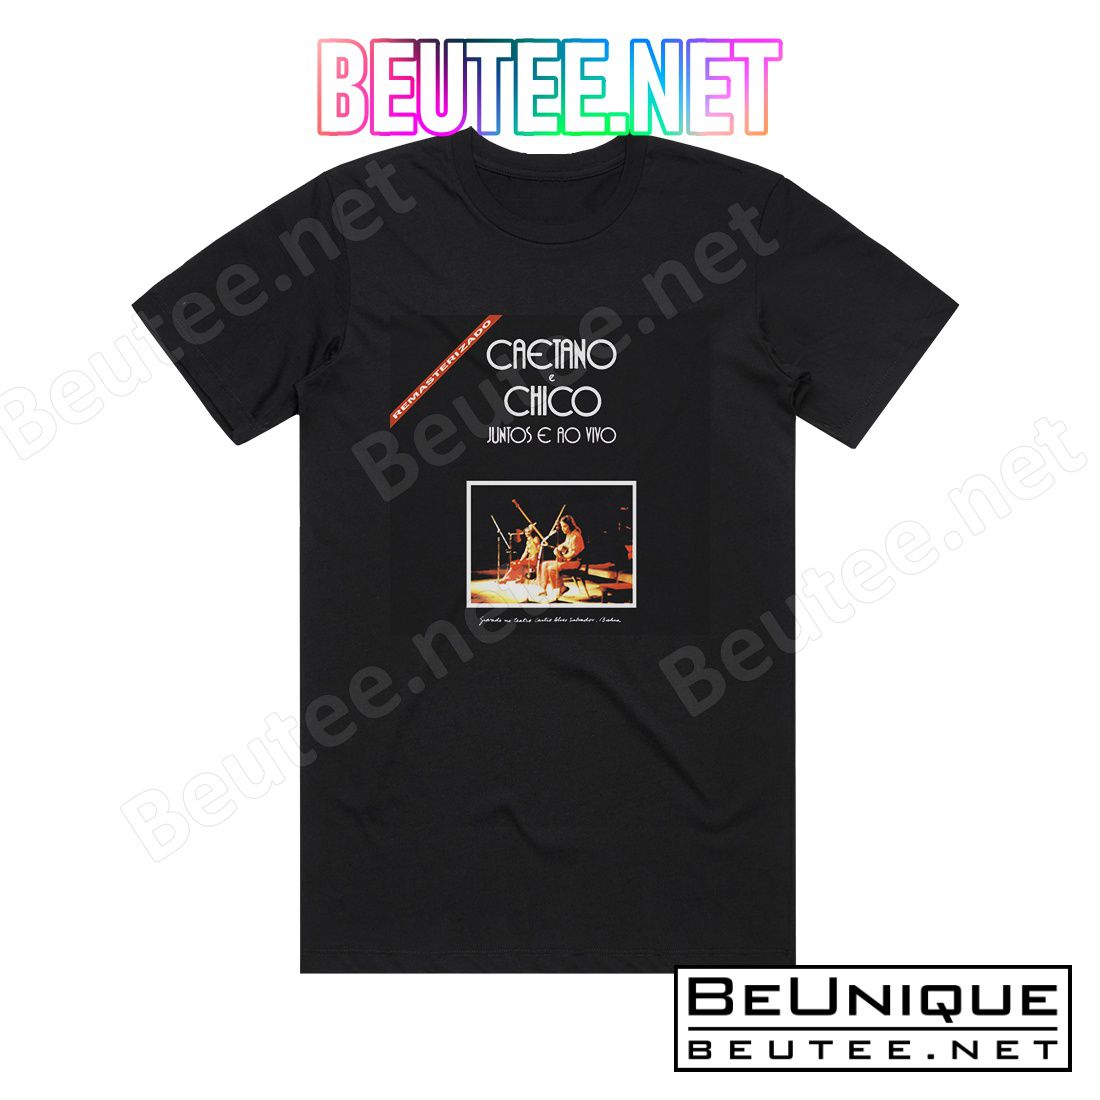 Caetano Veloso Caetano E Chico Juntos E Ao Vivo Album Cover T-Shirt